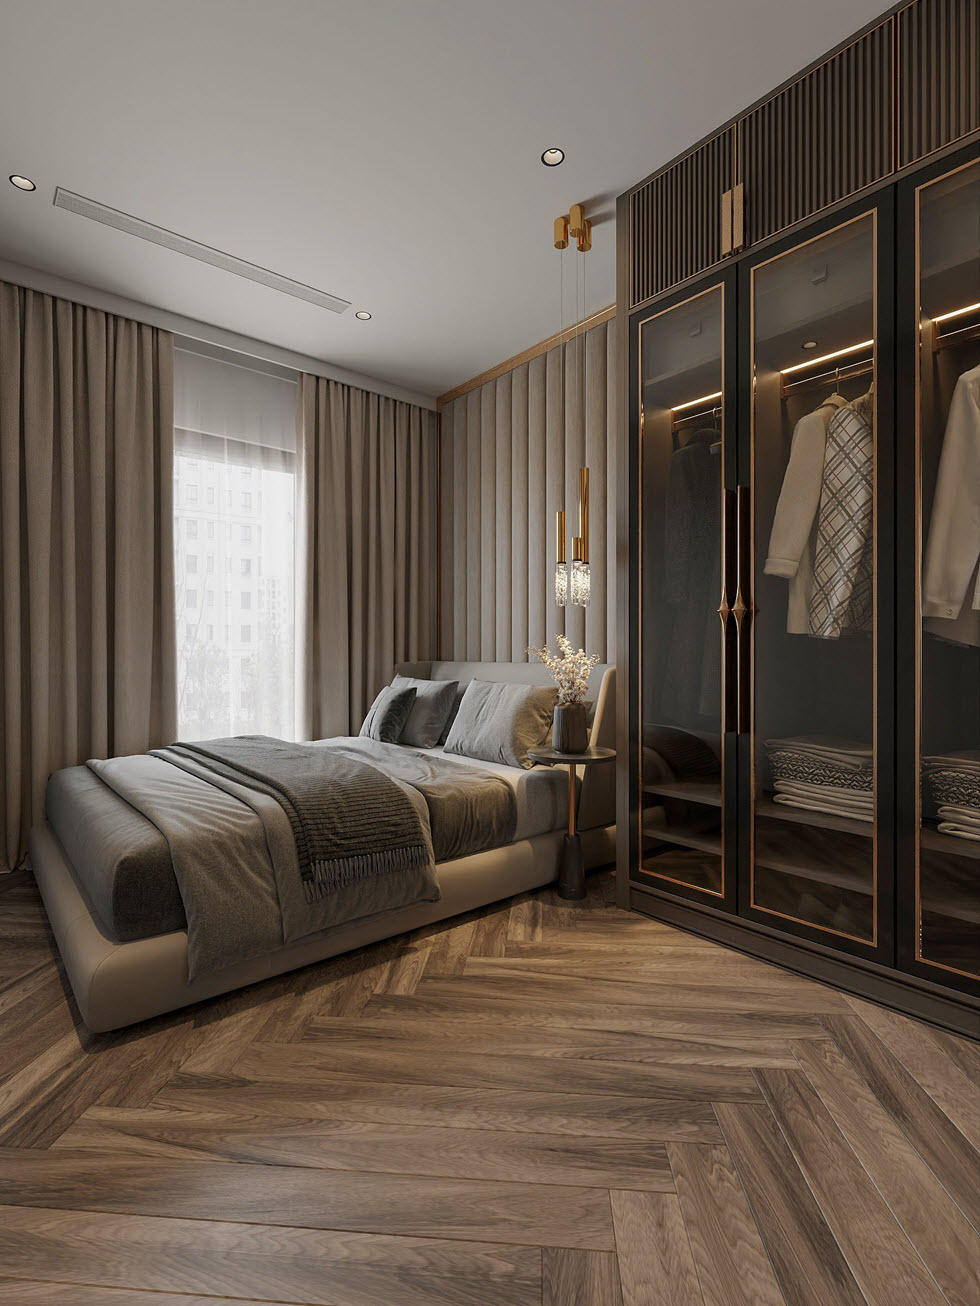 Các phòng ngủ trong căn hộ đều được thiết kế với tông màu trung tính nhẹ nhàng, tạo cảm giác thư giãn.